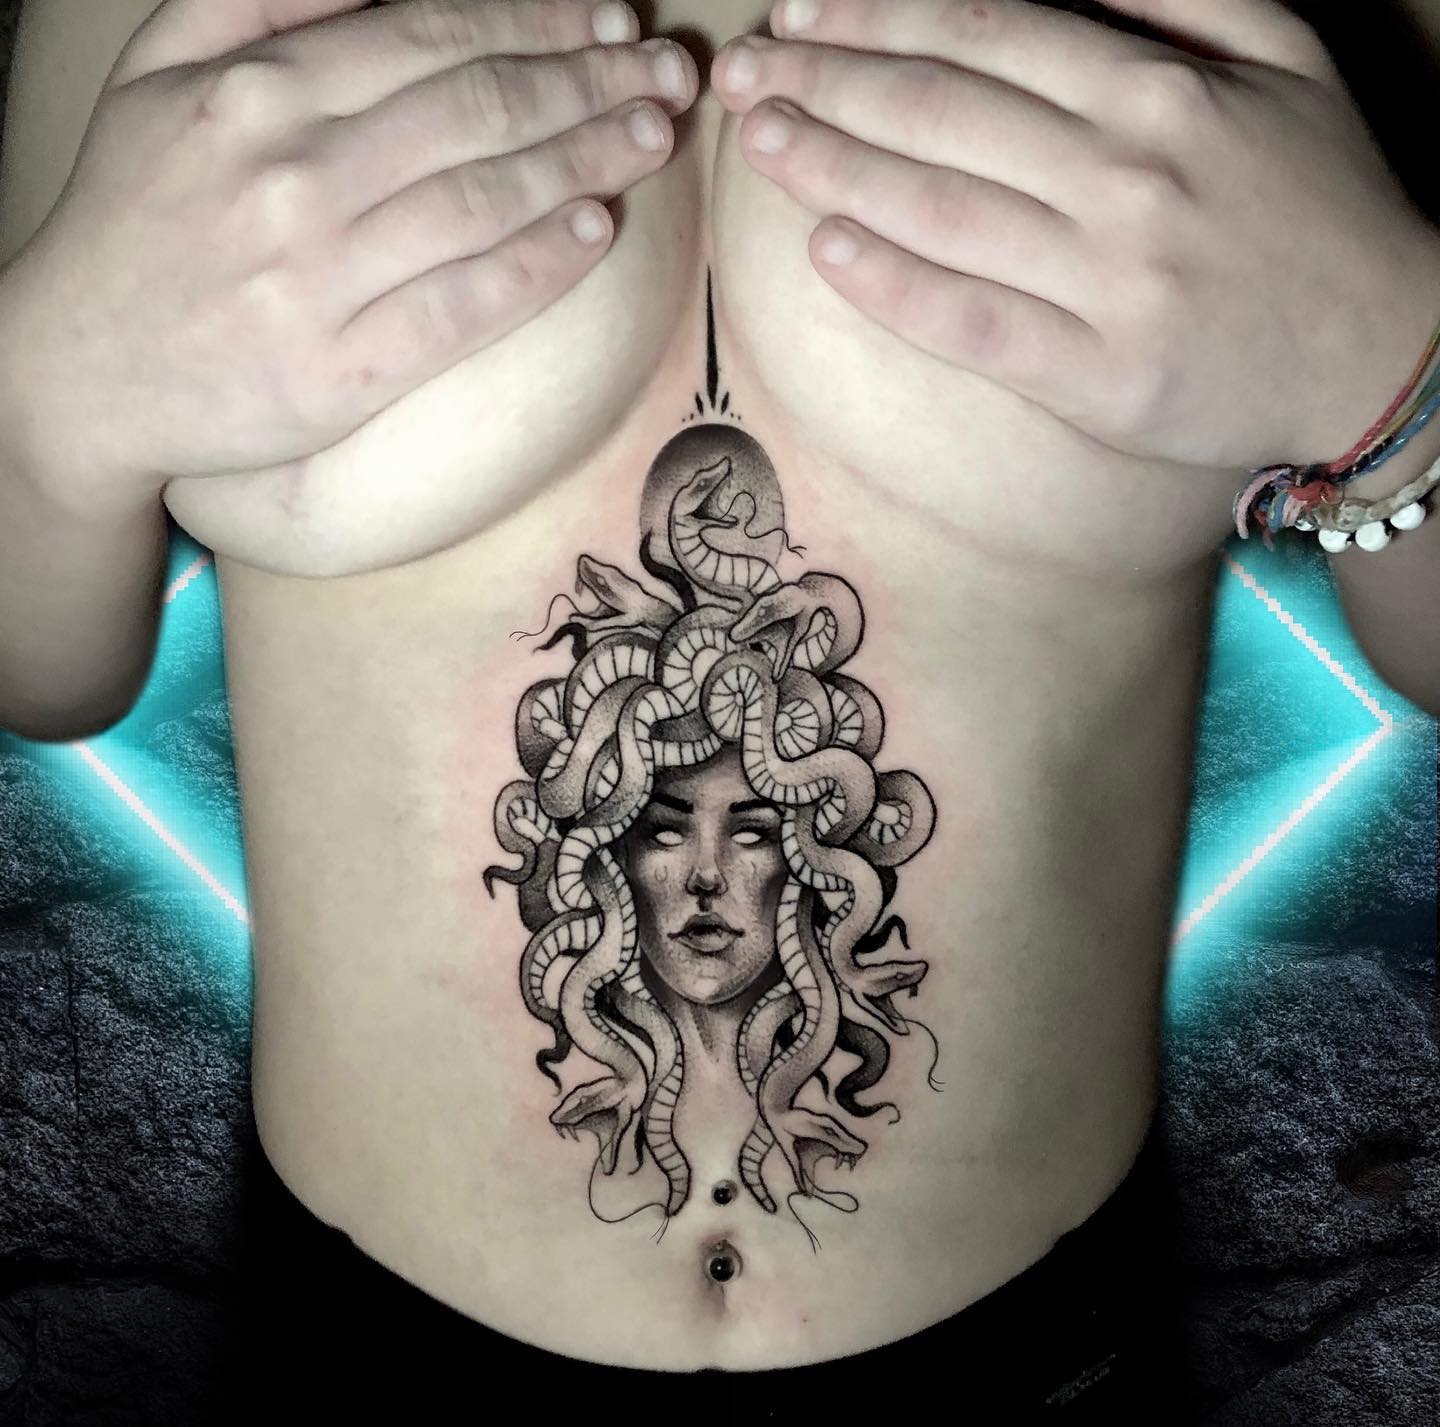 Medusa-Tattoo auf dem Brustbein